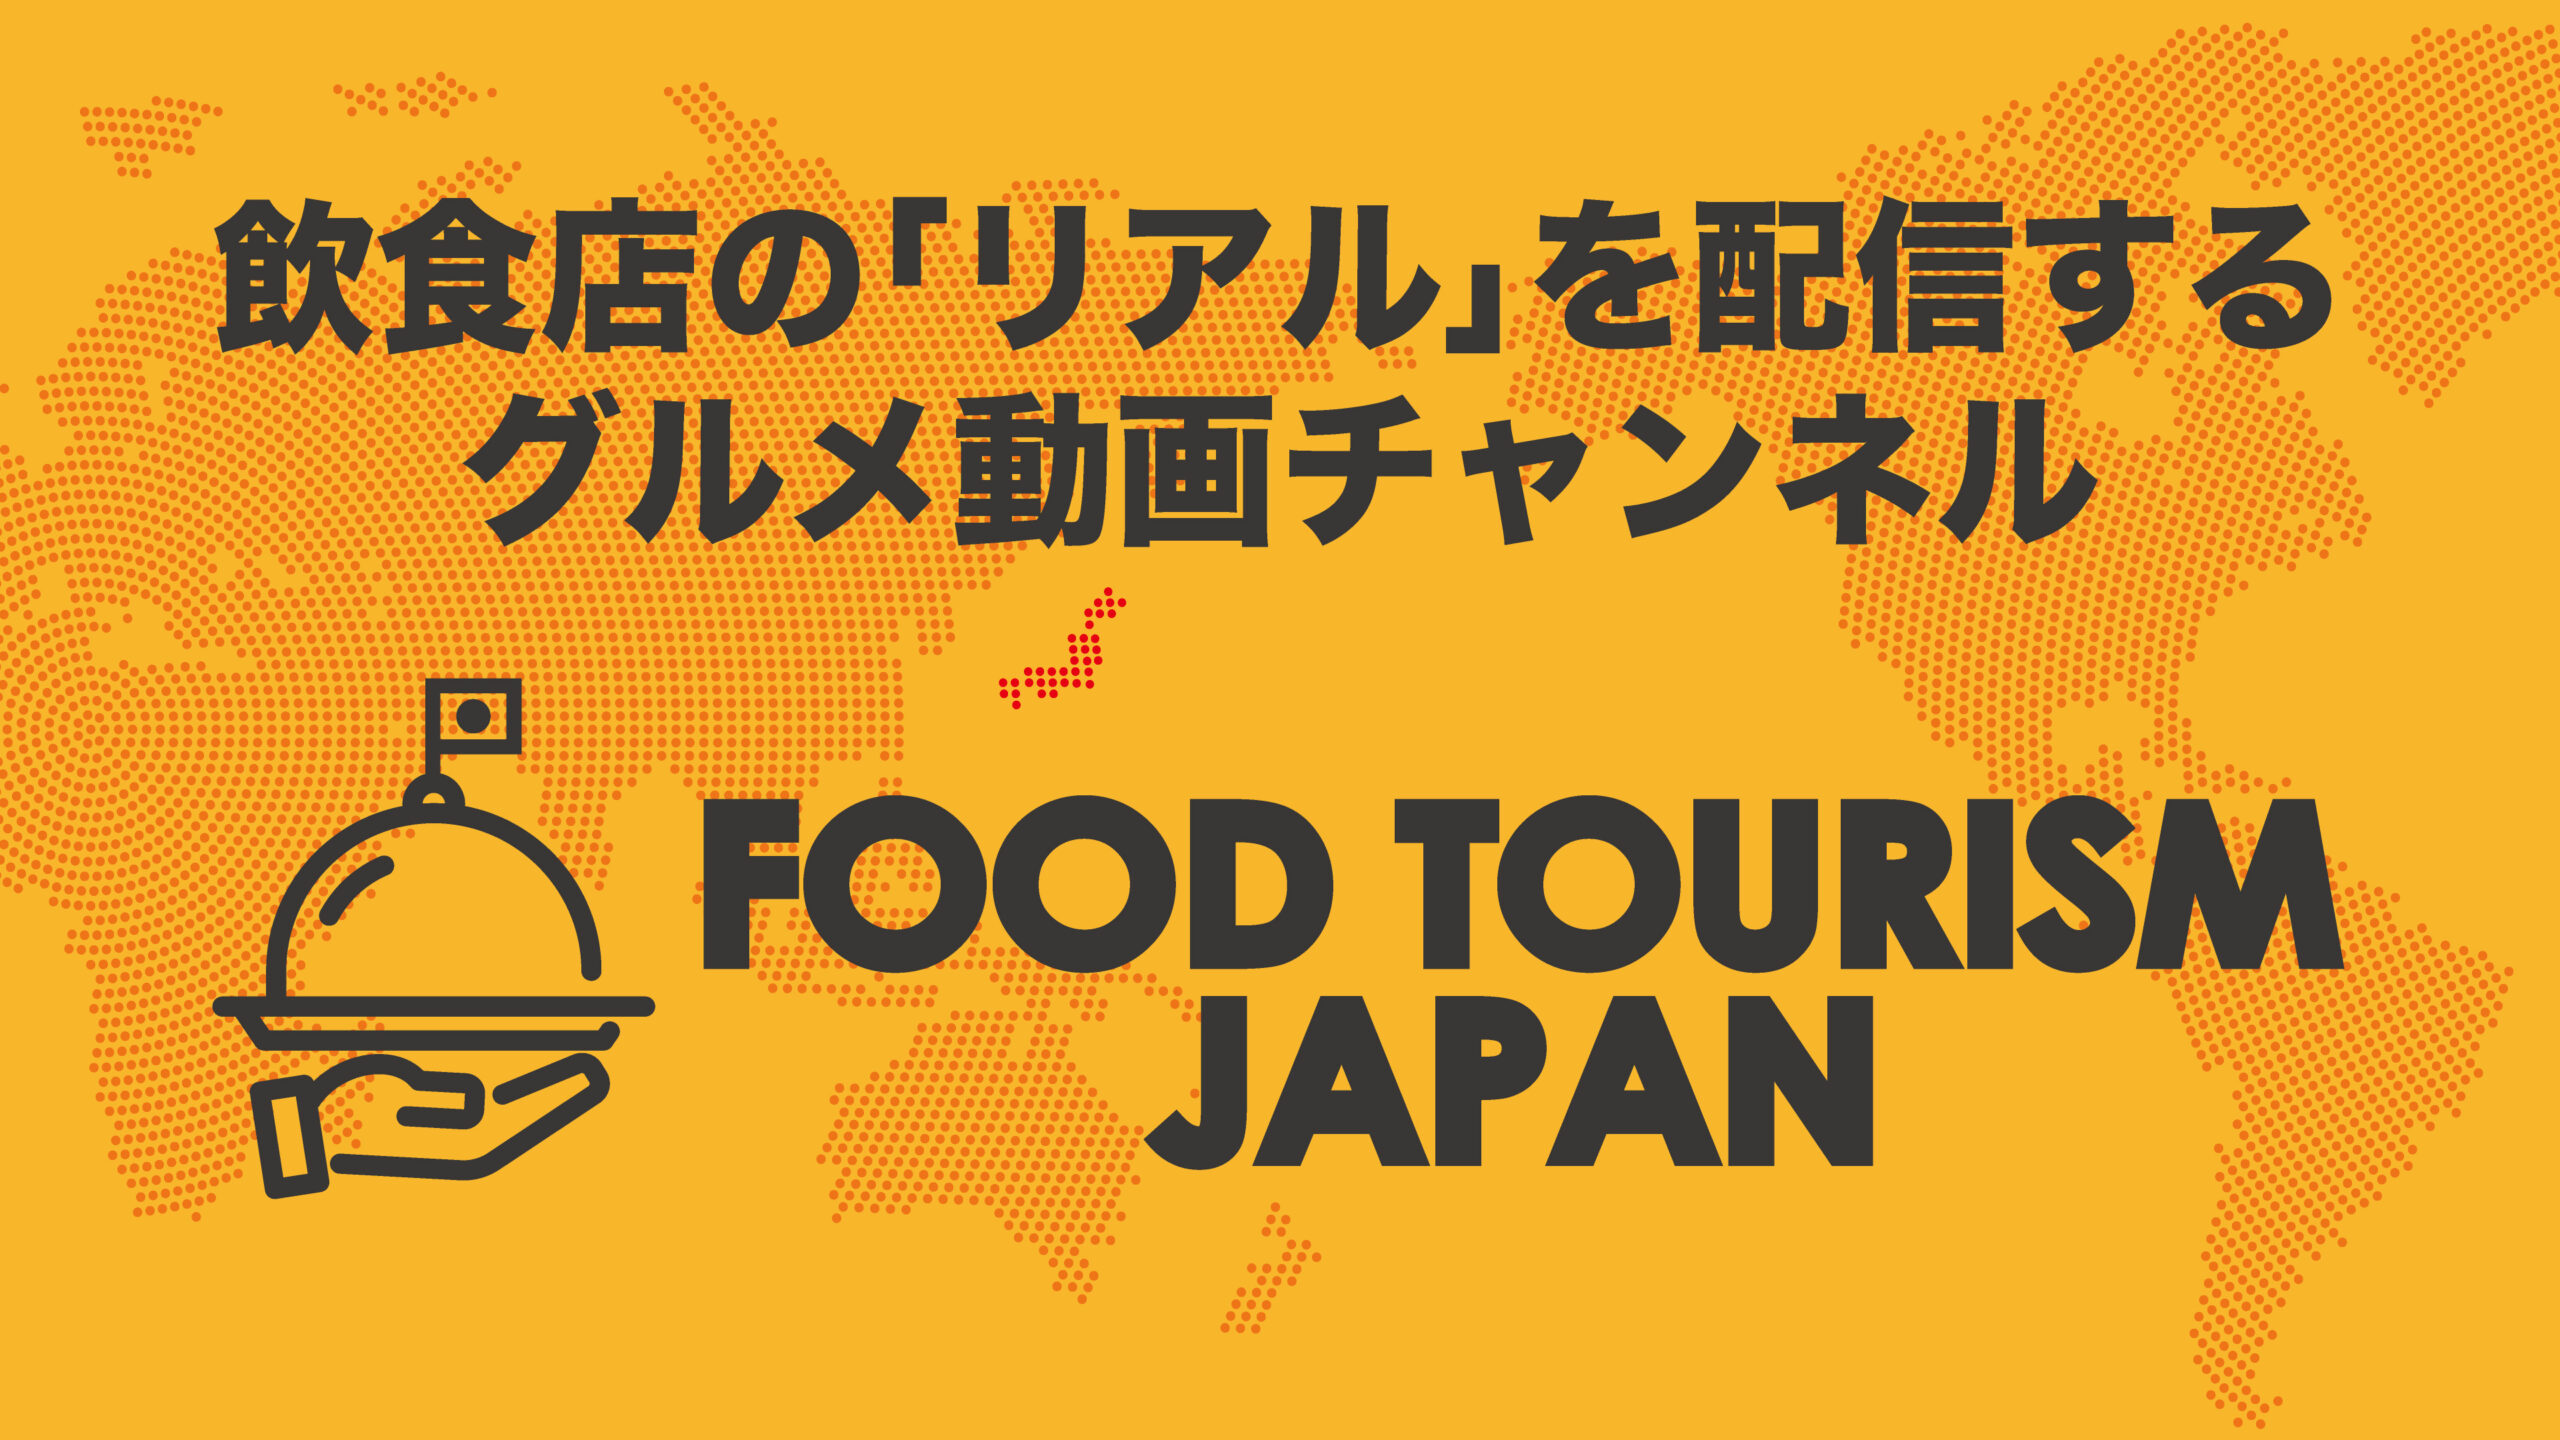 普段は見れない飲食店のリアルな映像を配信する密着系グルメ動画チャンネルFOOD TOURISM JAPANがスタート